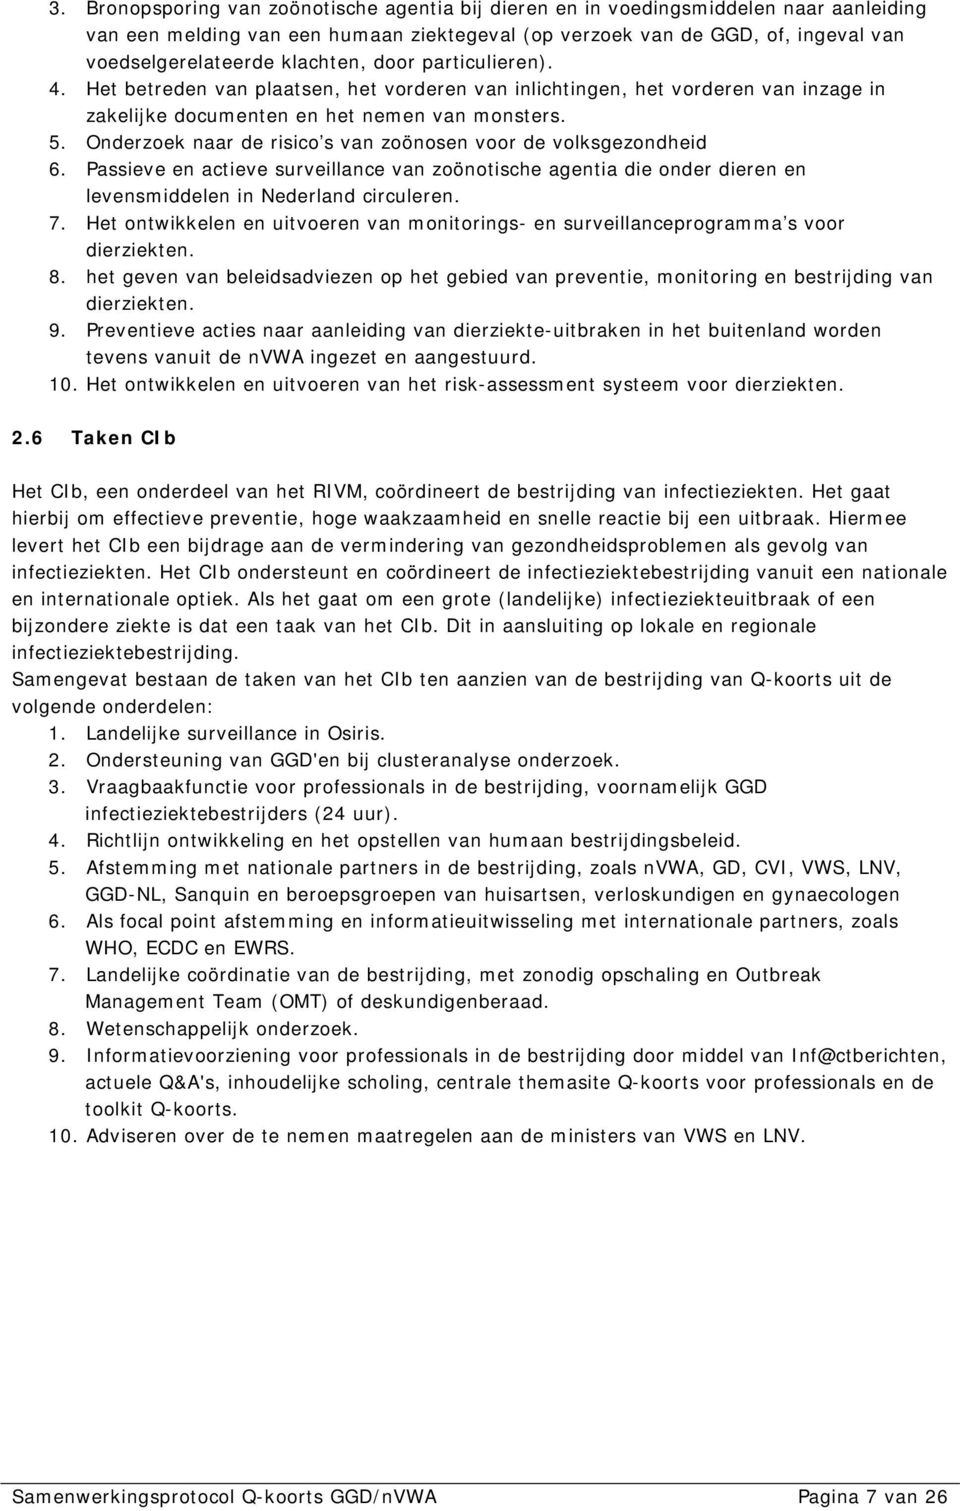 Onderzoek naar de risico s van zoönosen voor de volksgezondheid 6. Passieve en actieve surveillance van zoönotische agentia die onder dieren en levensmiddelen in Nederland circuleren. 7.